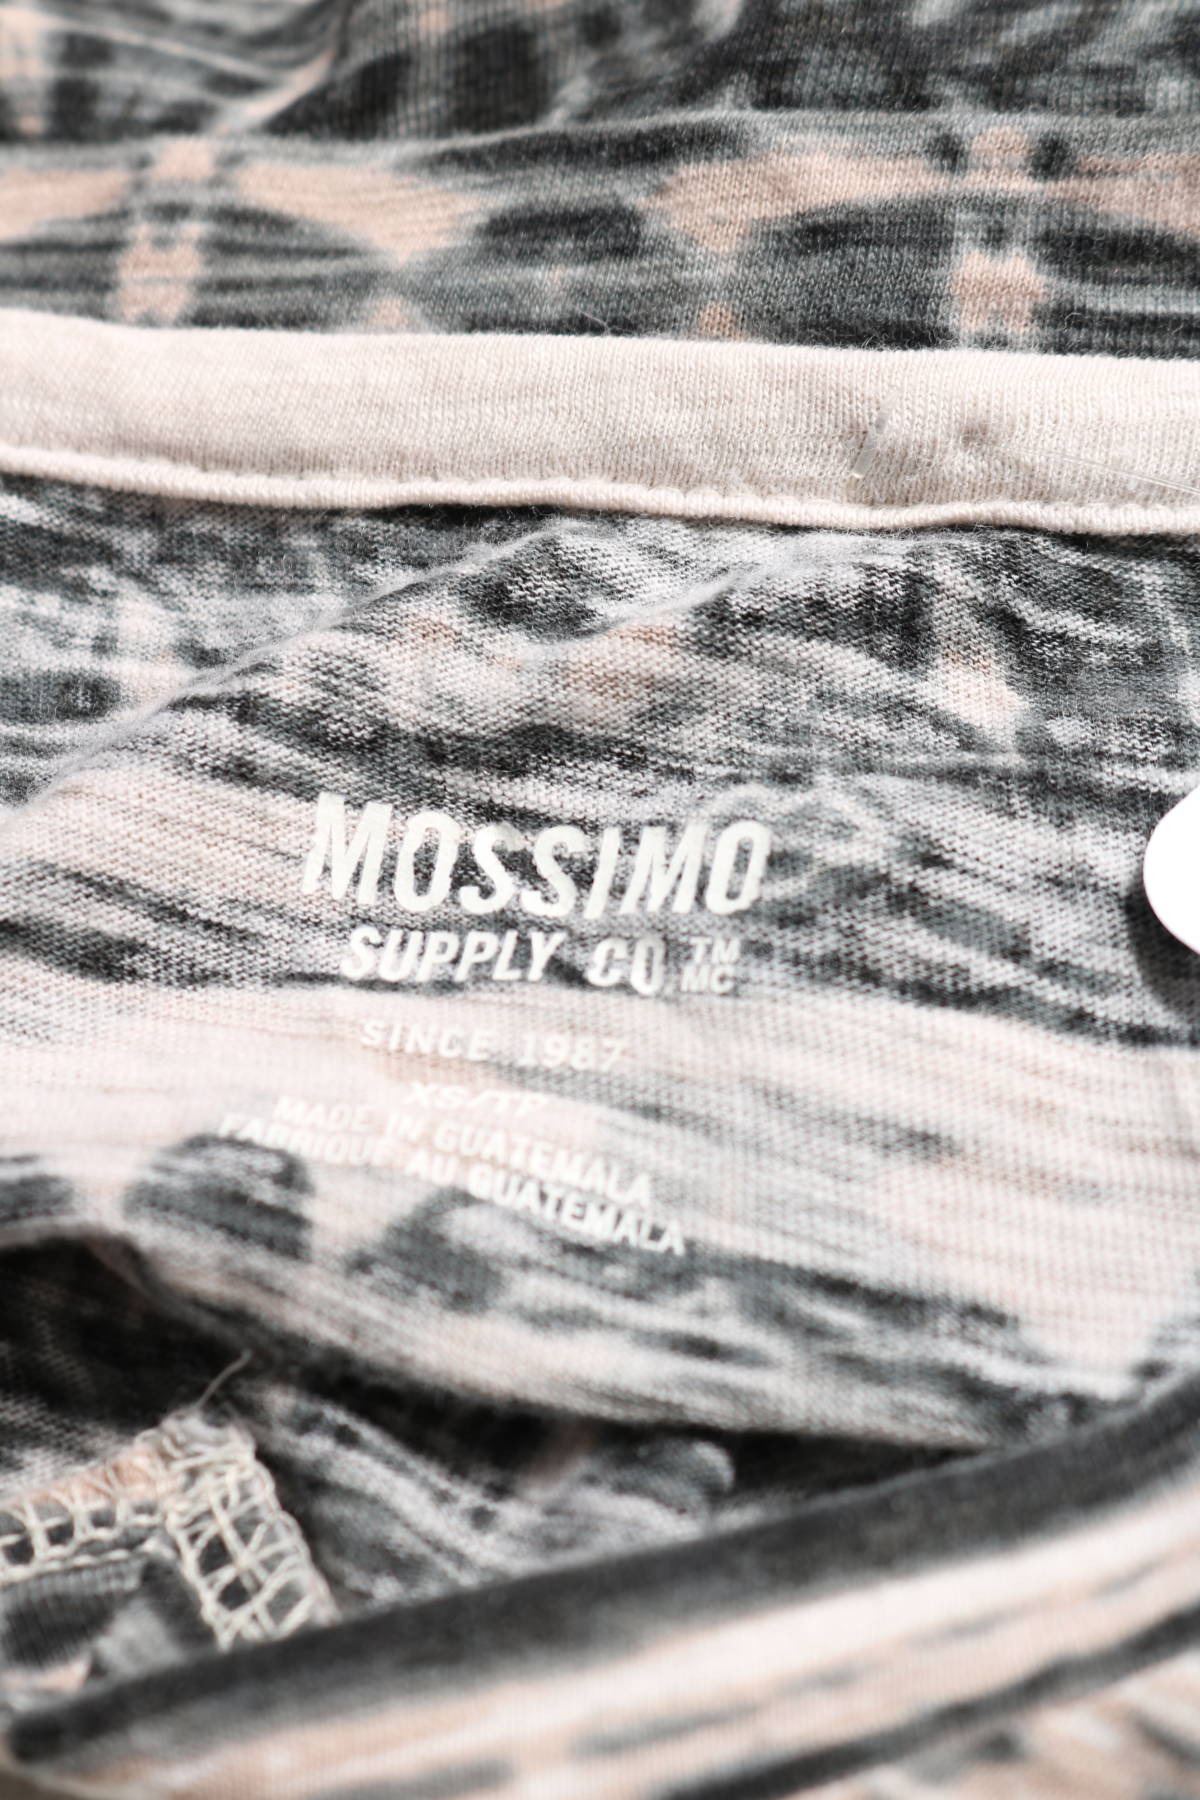 Тениска MOSSIMO SUPPLY CO.3